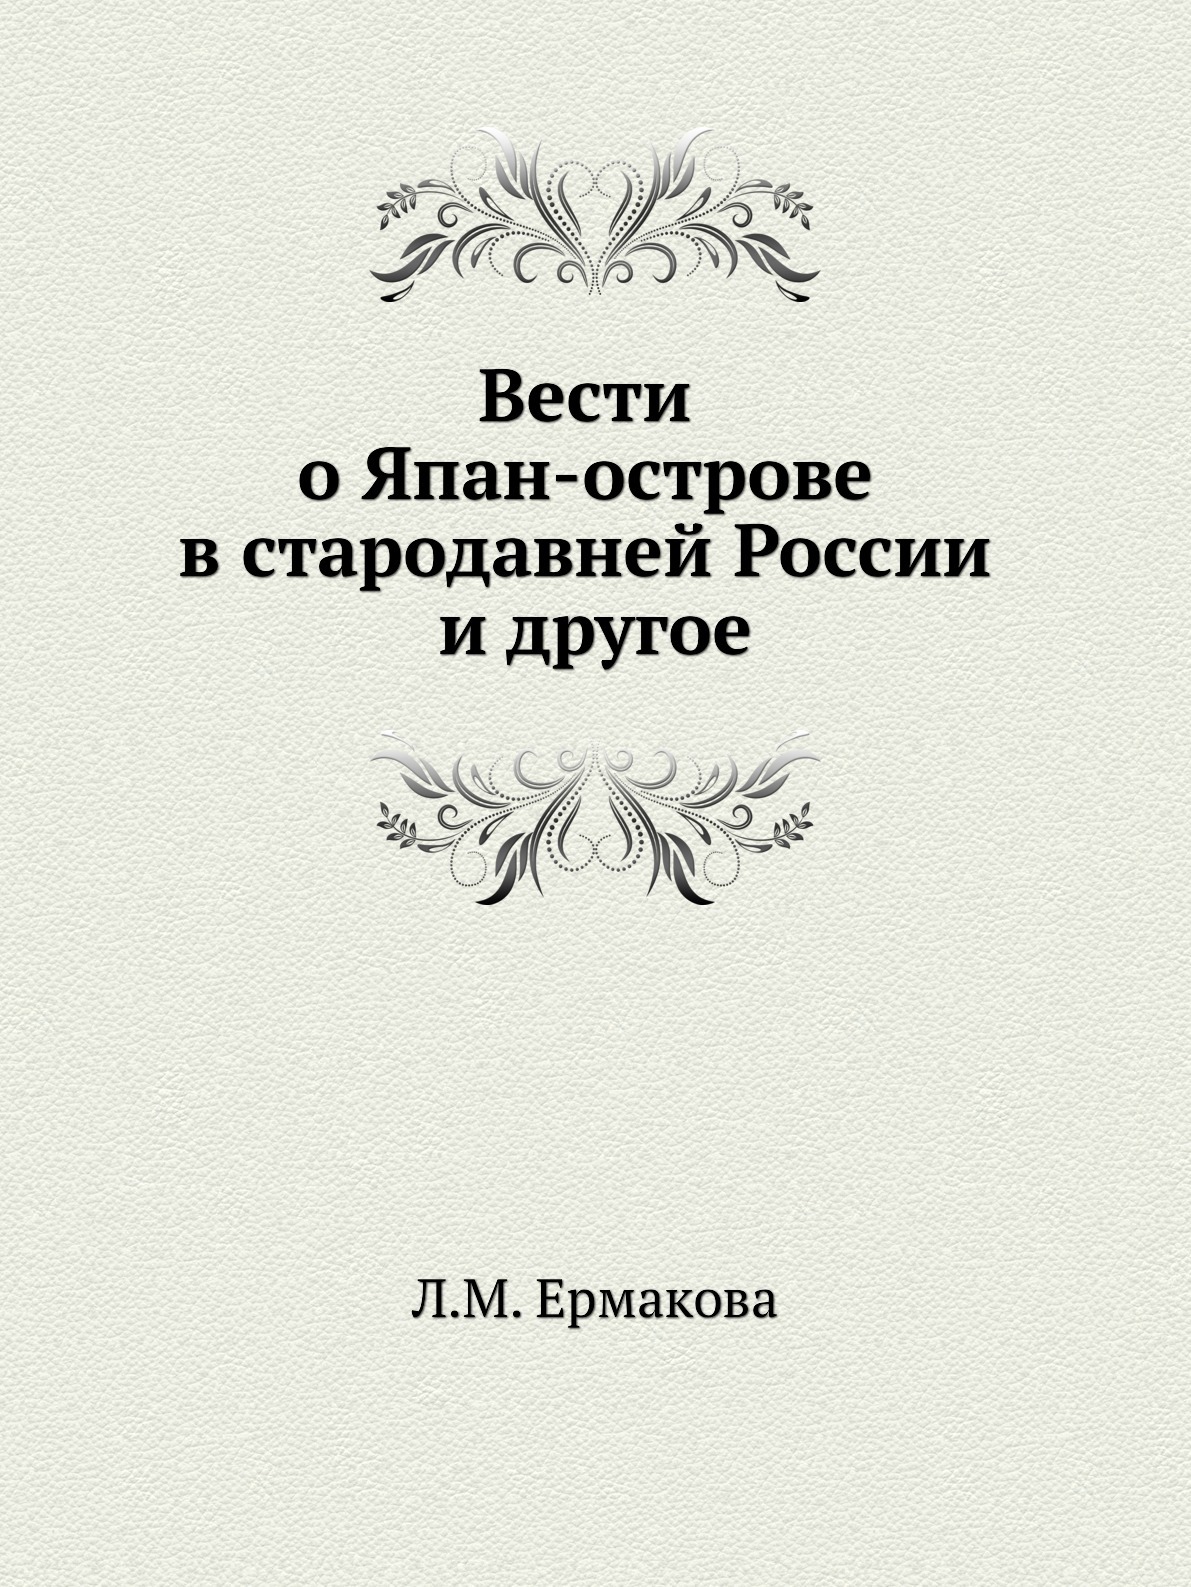 Книга первый том 8. Л. М. Ермакова. Книги про киргизов. Весть книга.